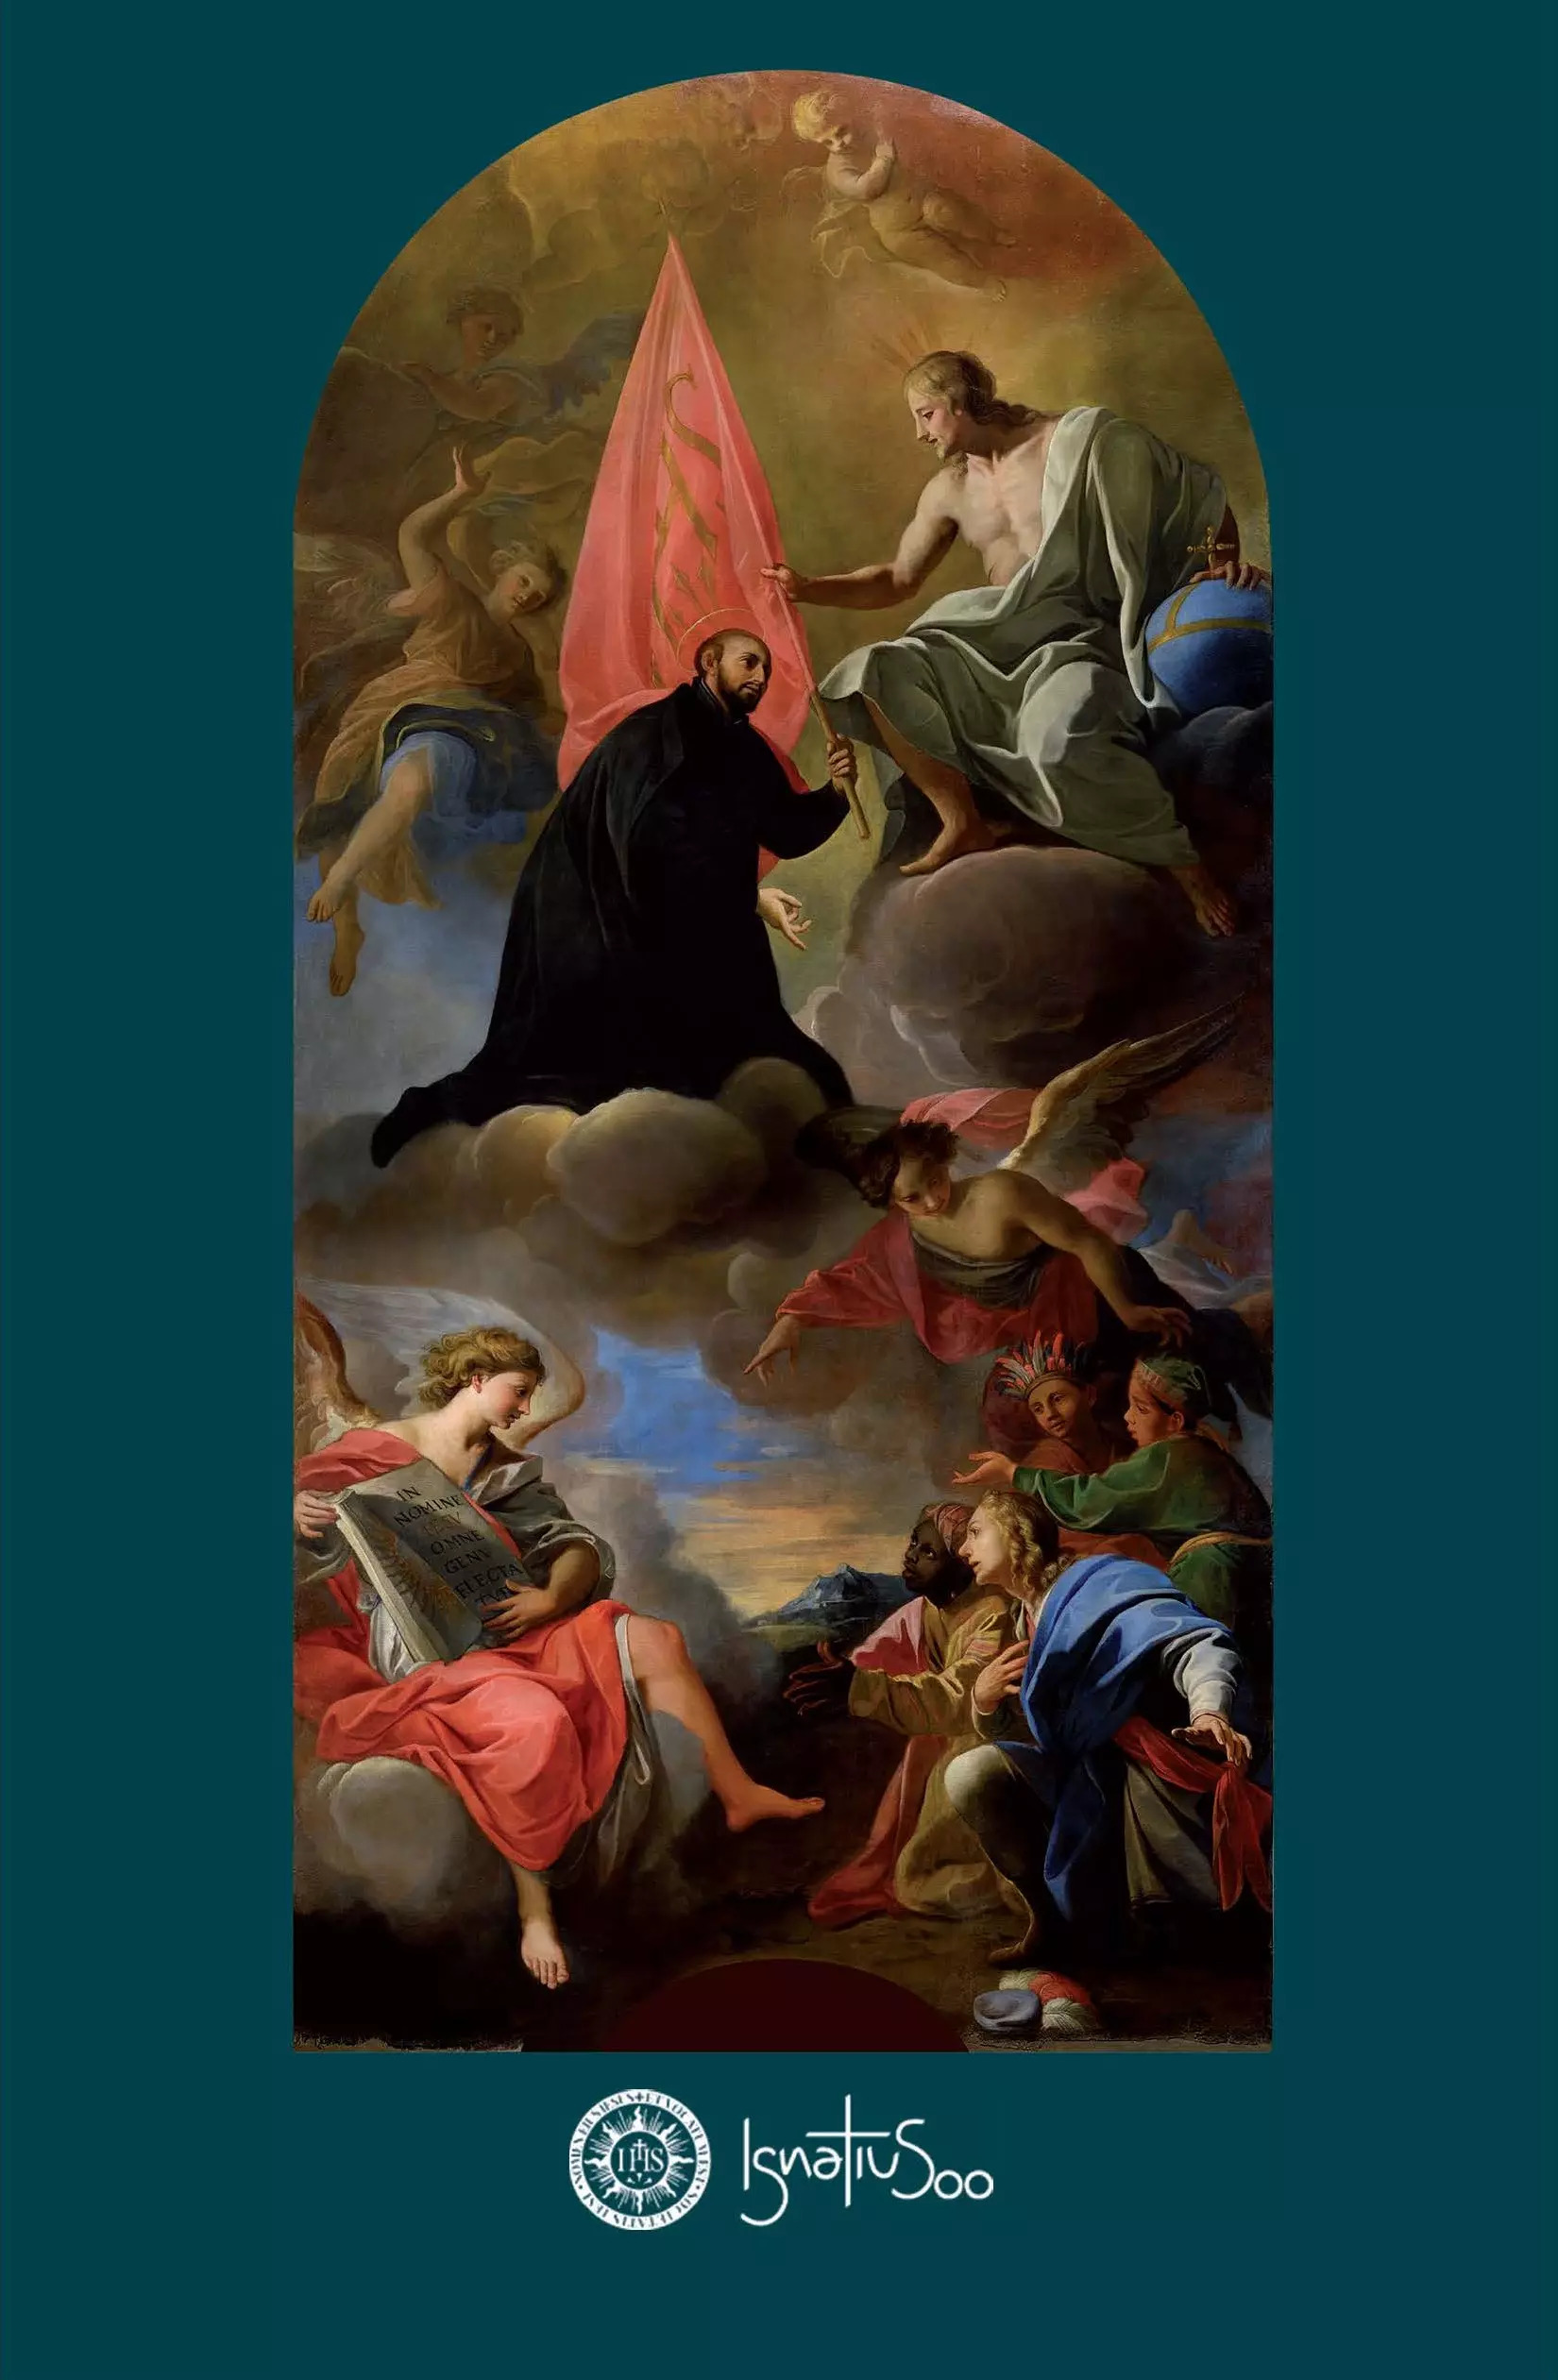 Kartka z fragmentem obrazu ze św. Ignacym przyjmującym misję od Chrystusa. Obraz autorstwa Andrea Pozzo